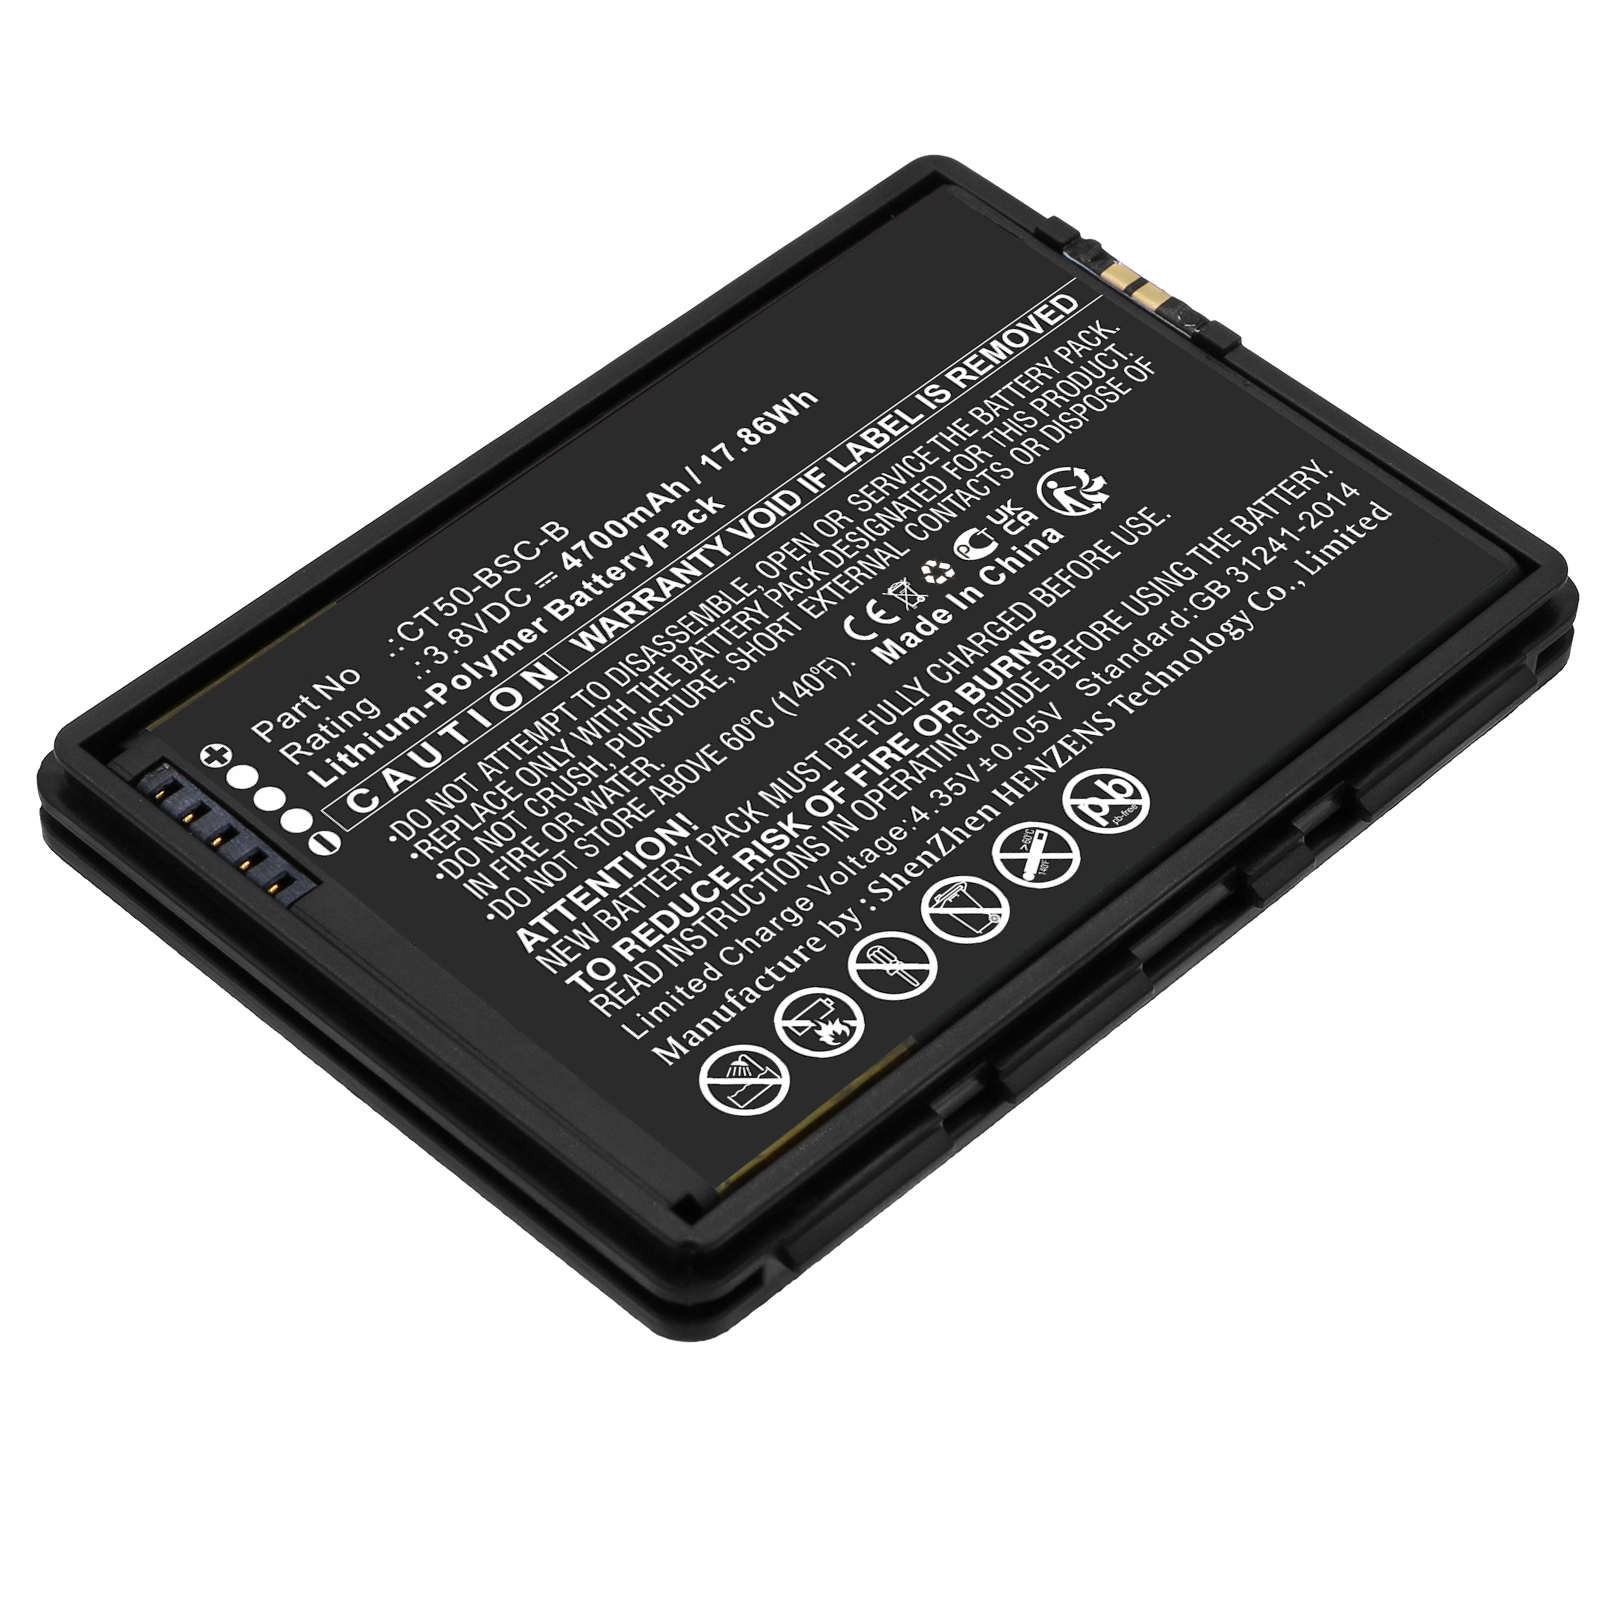 Synergy Digital Barcode Scanner Battery, Compatible with Honeywell 318-055-018 Barcode Scanner Battery (Li-Pol, 3.8V, 4700mAh)